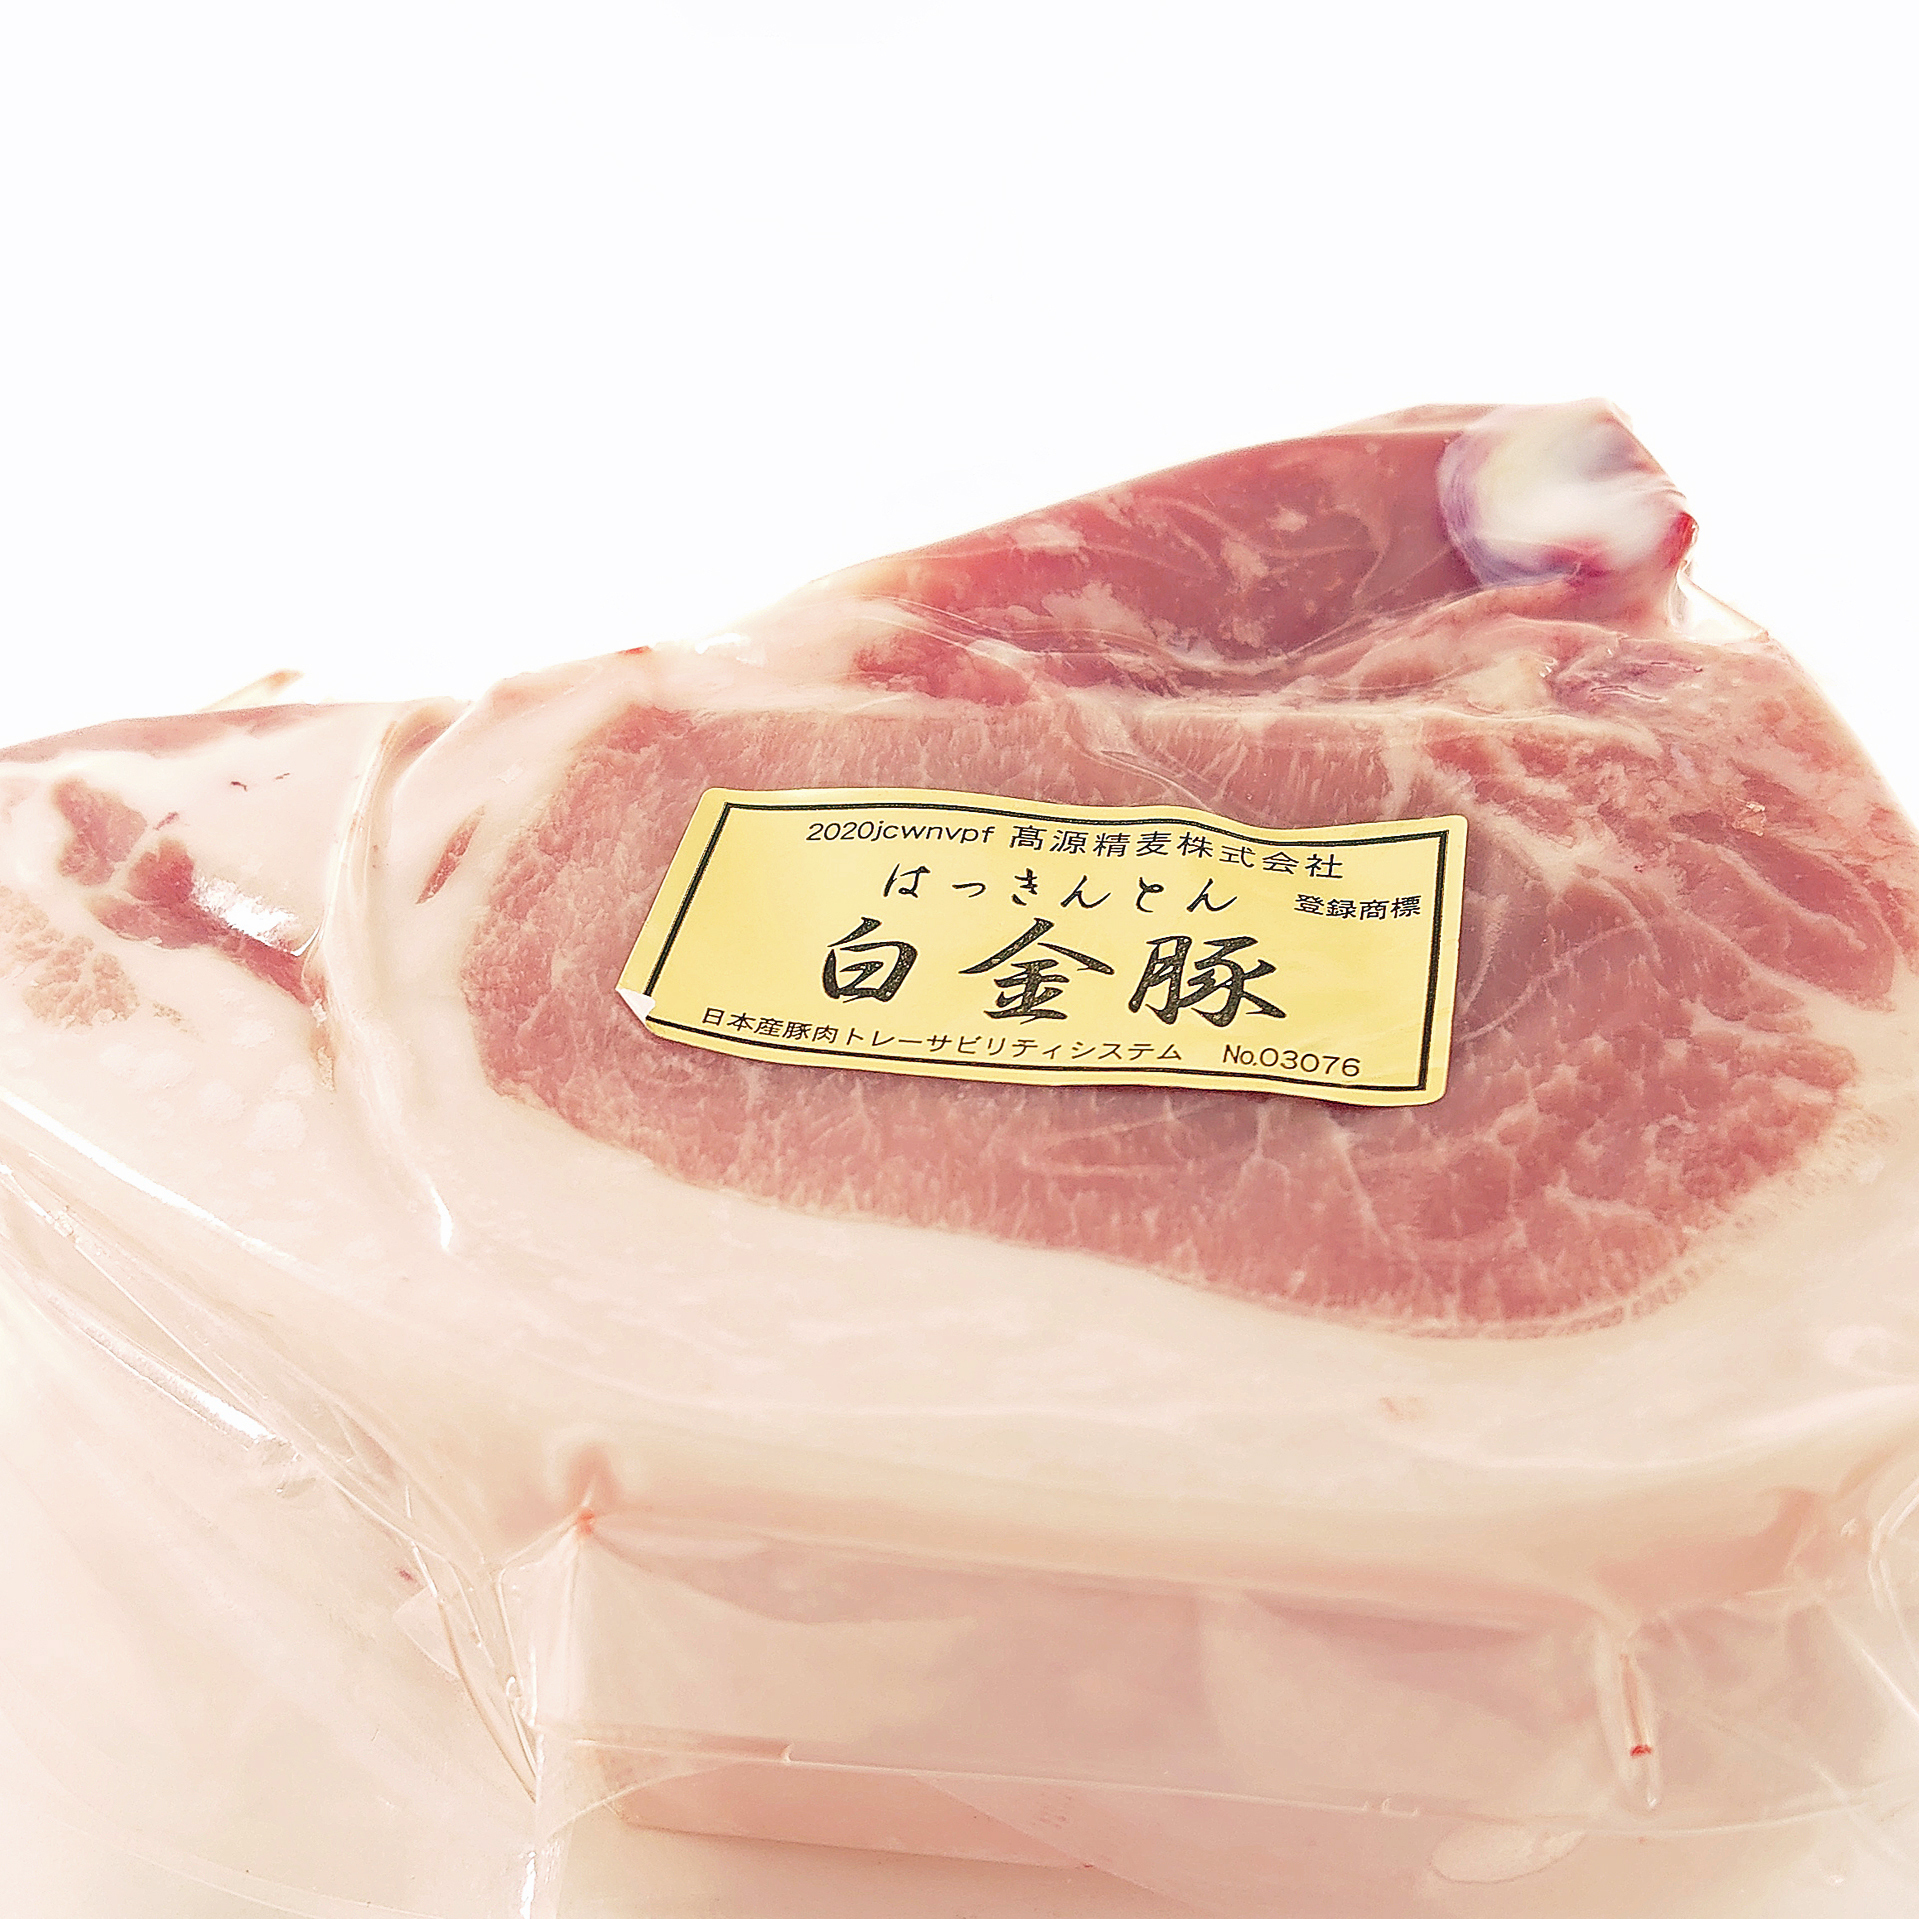 [冷凍]肉の王道Tボーン[白金豚]1枚300〜450g 冷凍 Tボーン(300〜400g)3枚 冷凍(真空パック)